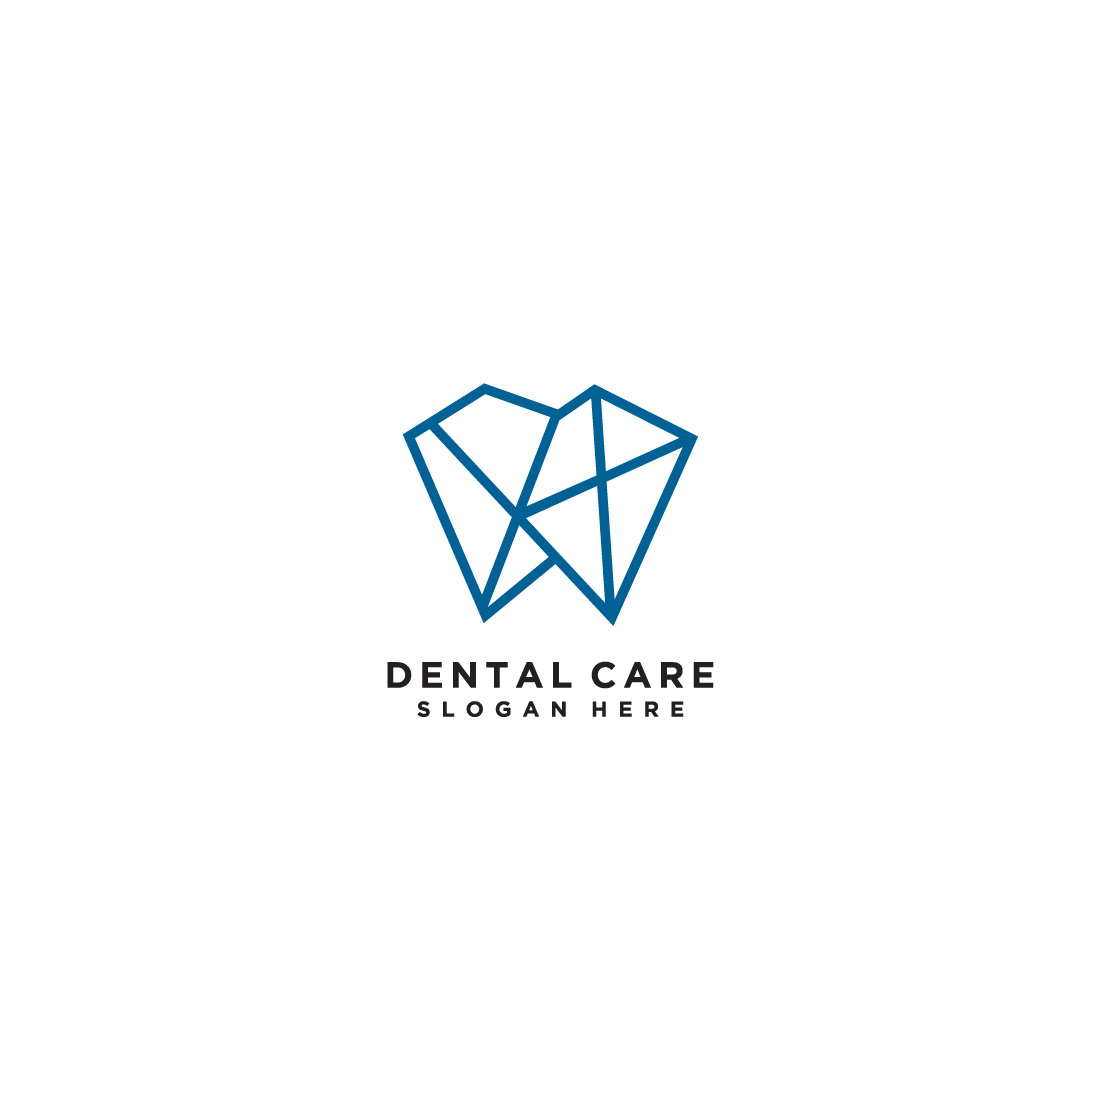 dental care logo design preview image.